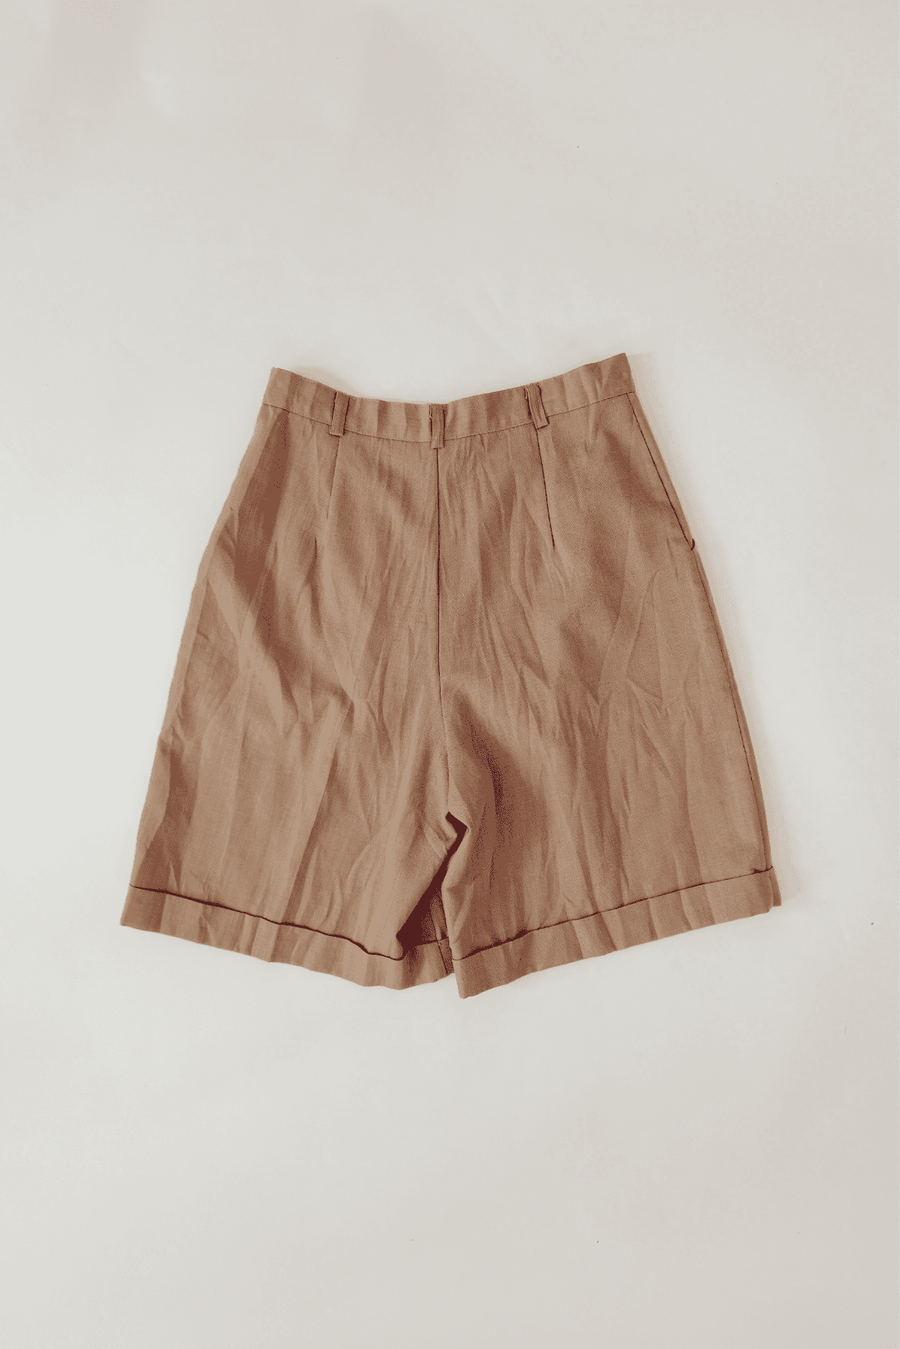 80s Vintage Bill Blass Beige High Waist Shorts 28” W Made in USA